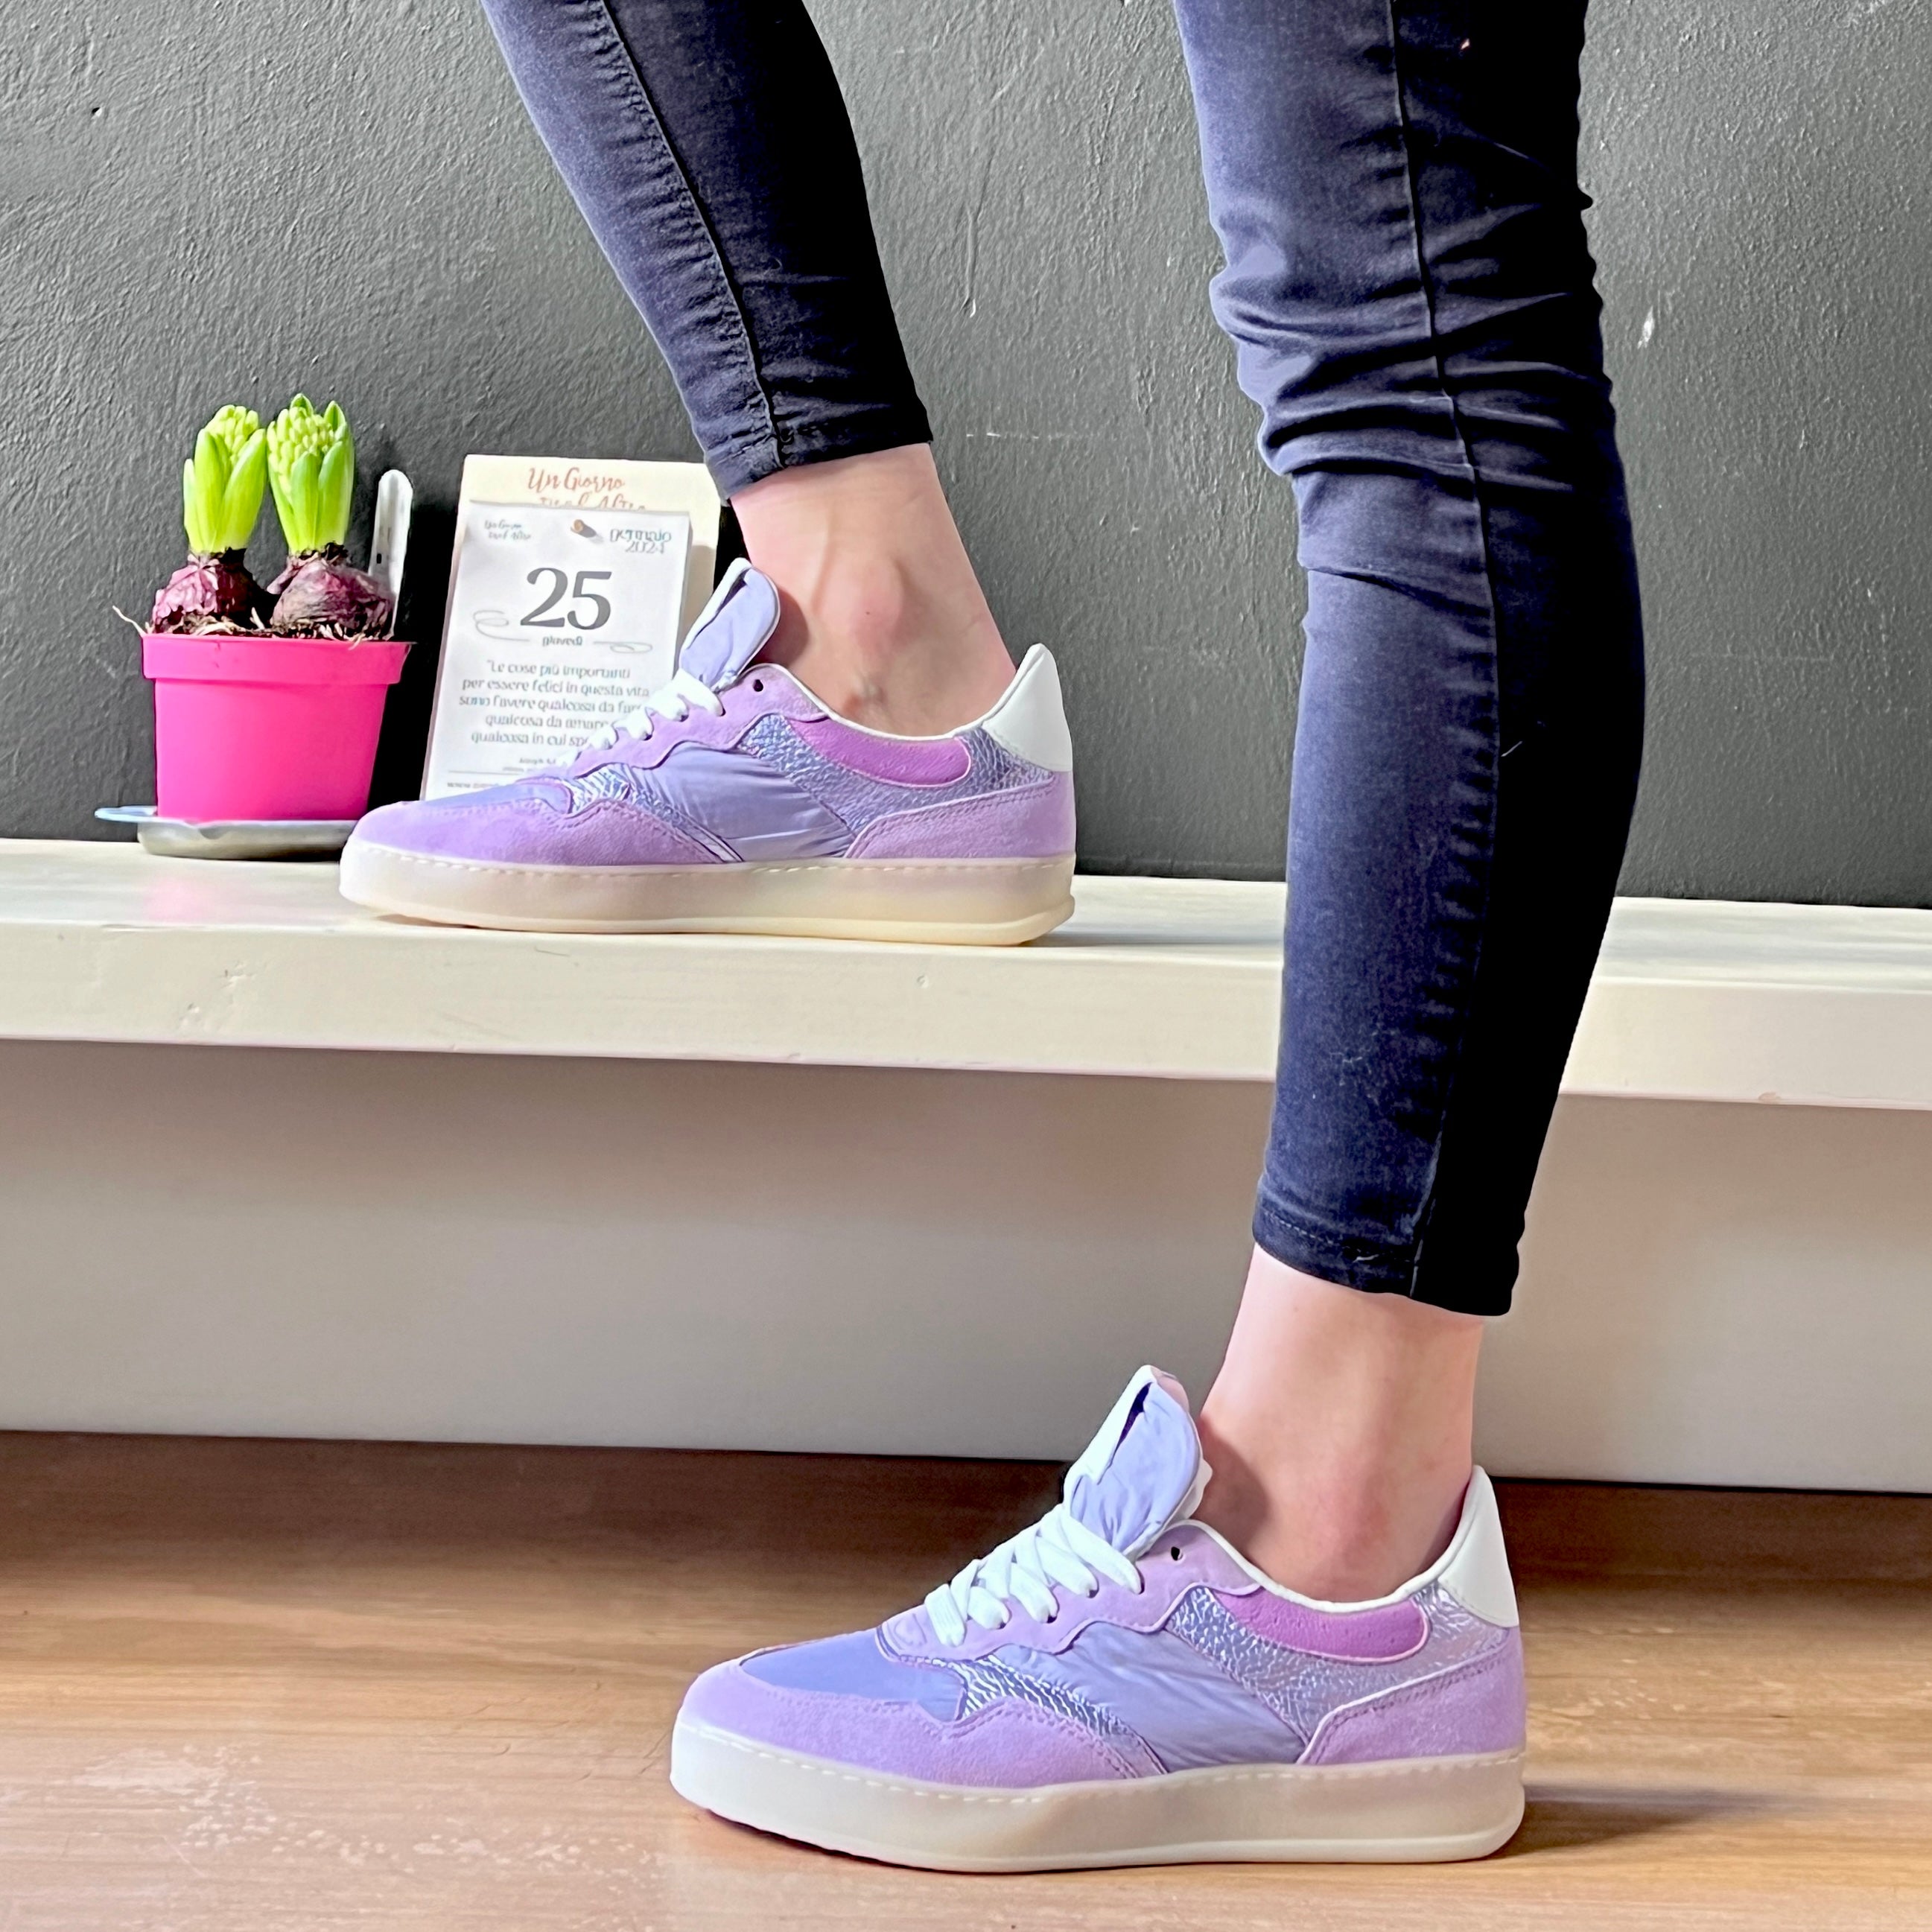 City Lilac sneaker in tela e camoscio lilla stile anni 70